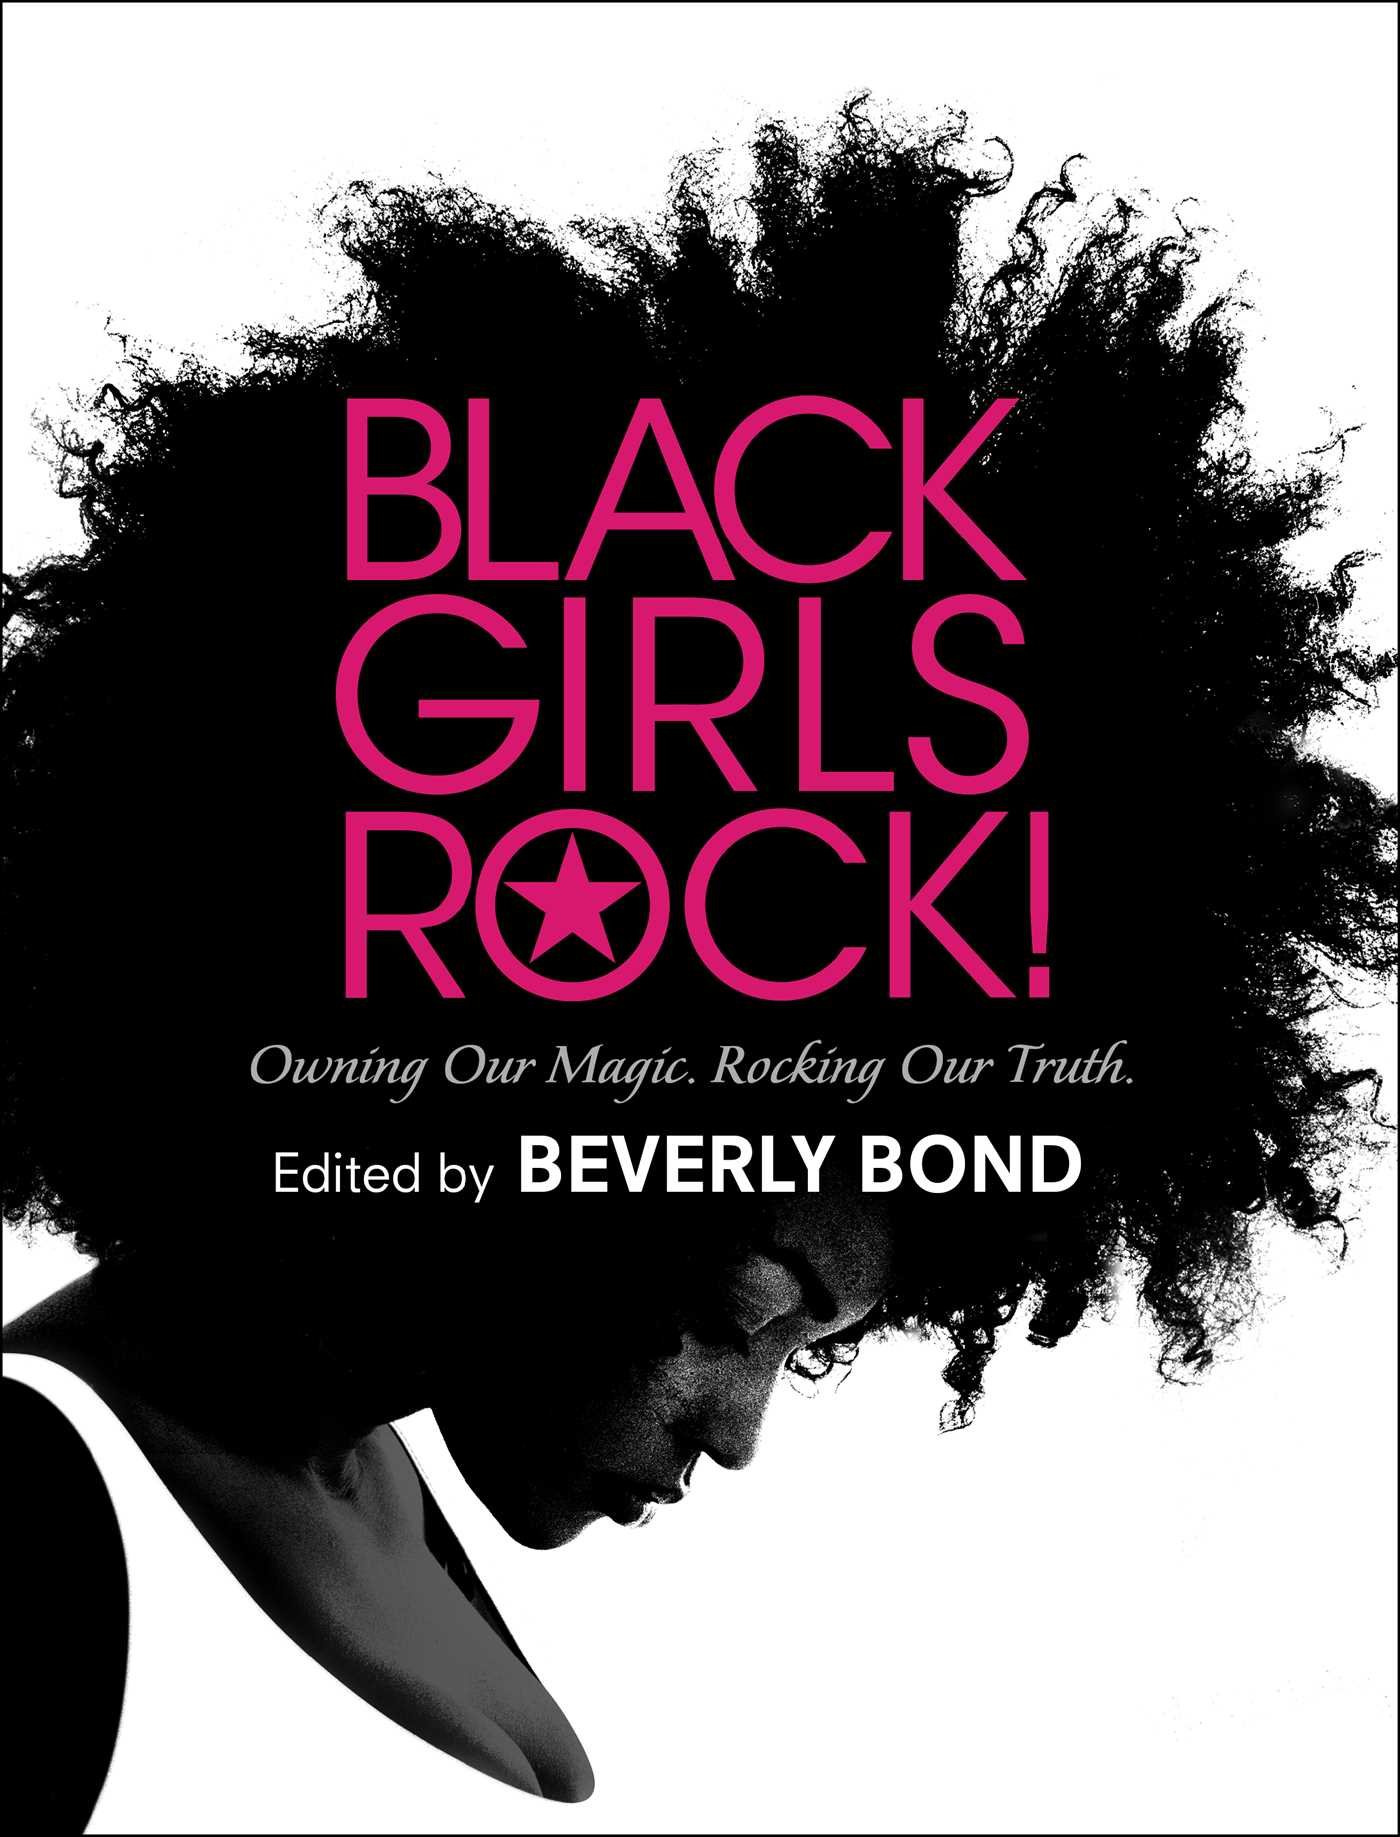 Image for "Black Girls Rock!"